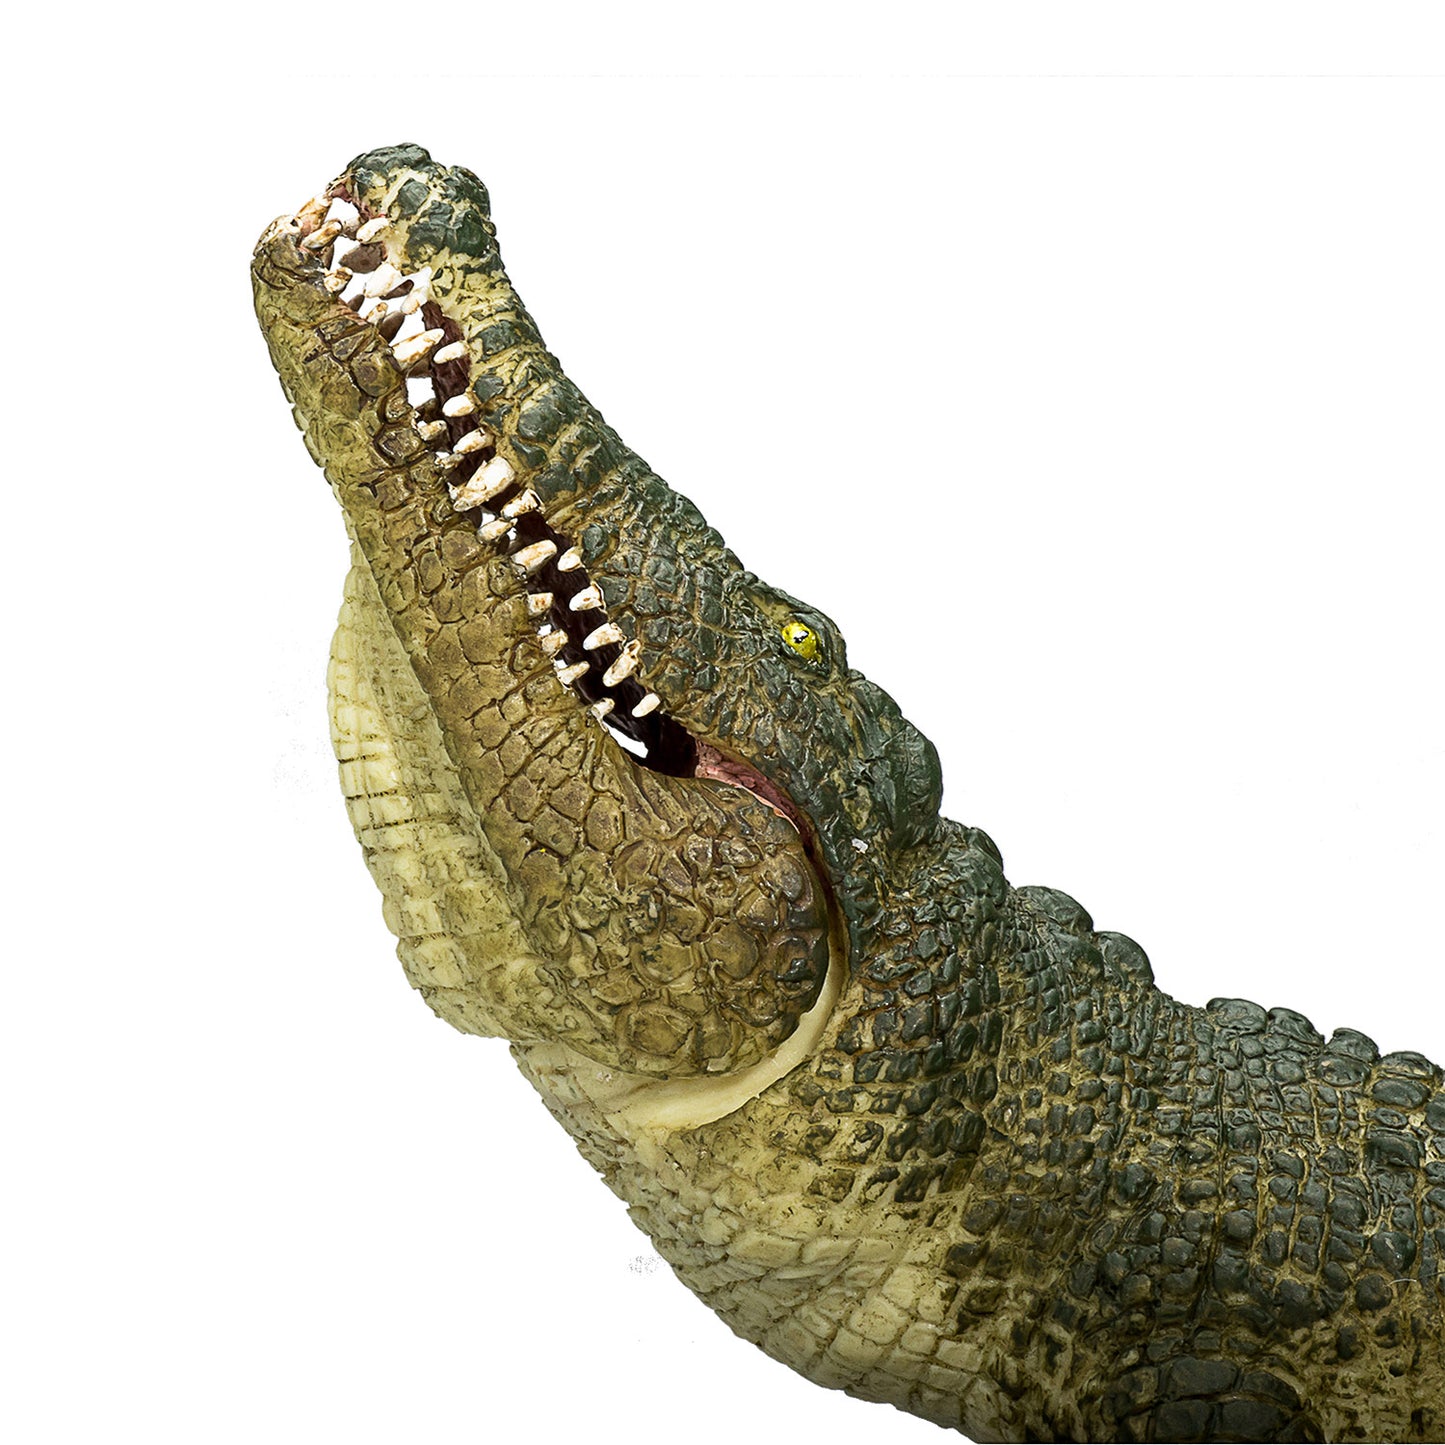 Crocodile de vida silvestre Mojo con mandíbula en movimiento 387162